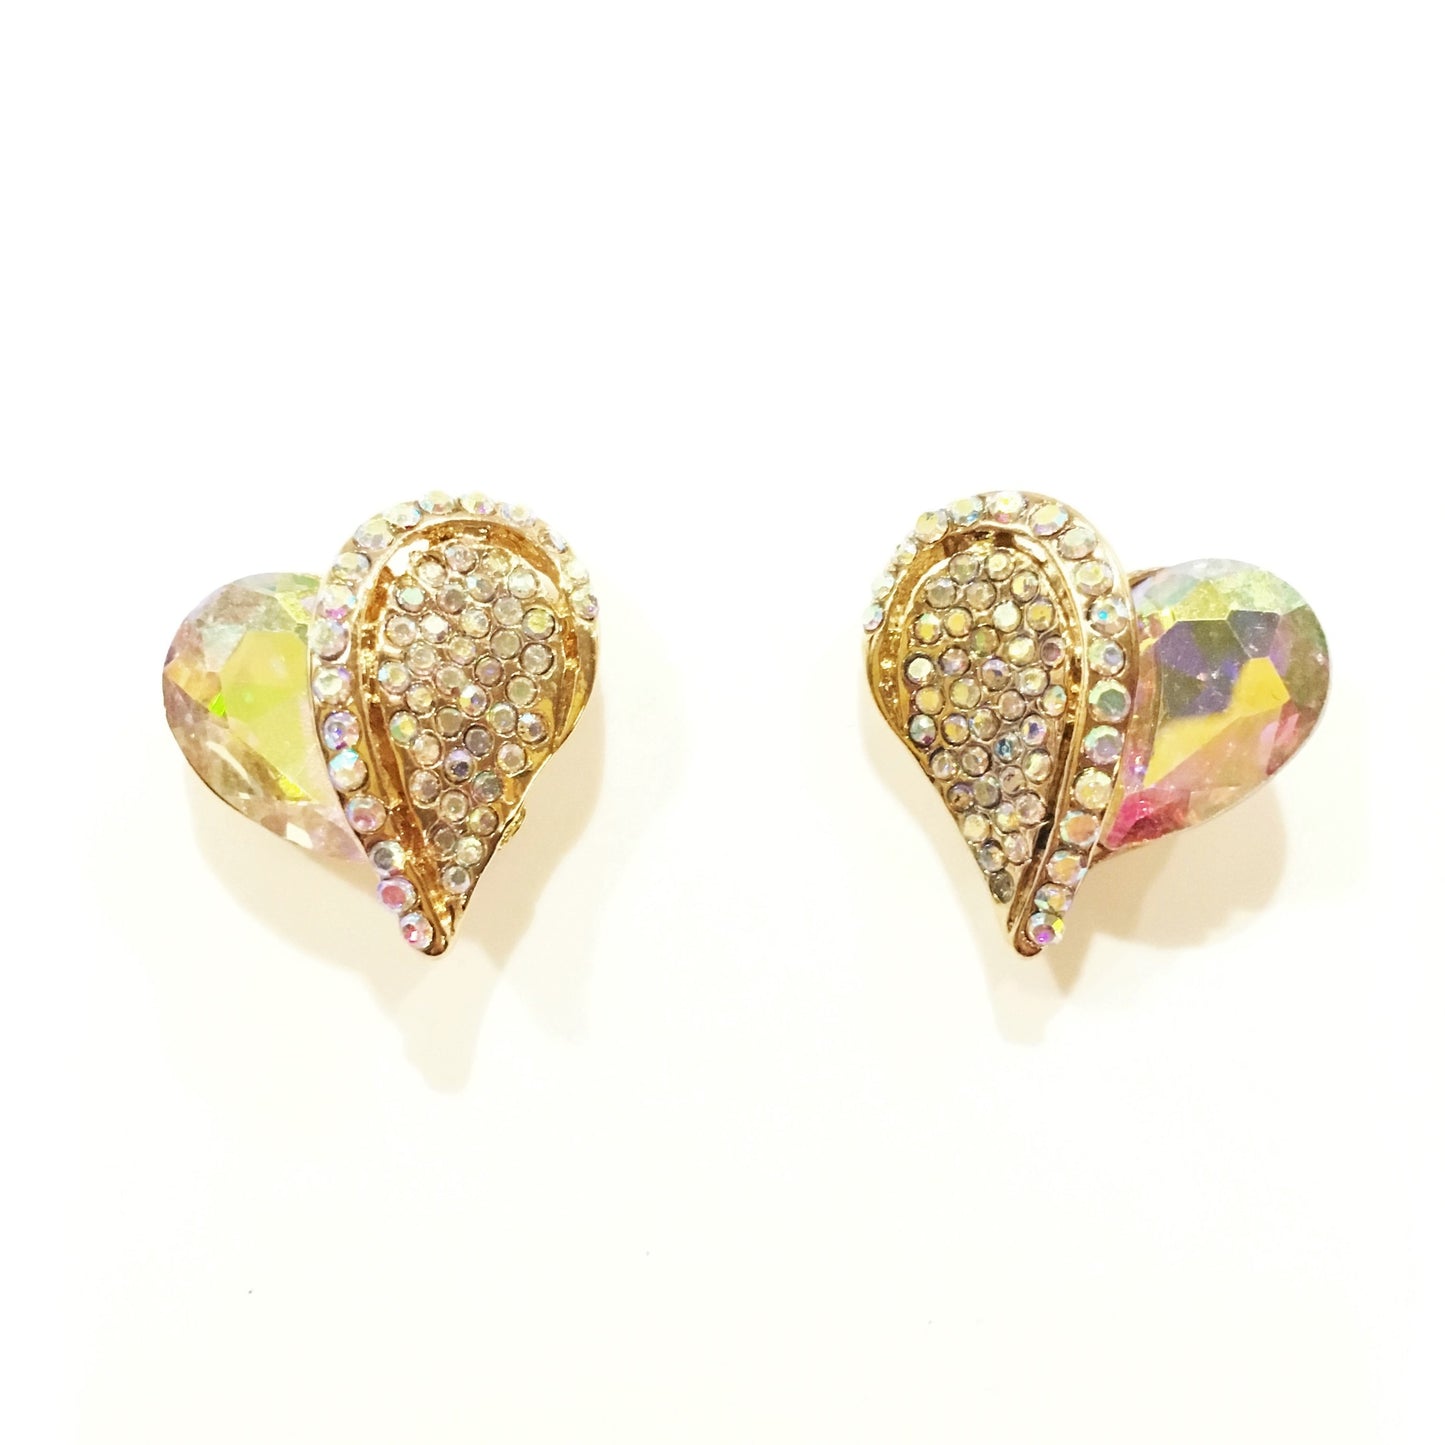 Heart Earrings #40-102AB (Aurora Borealis)